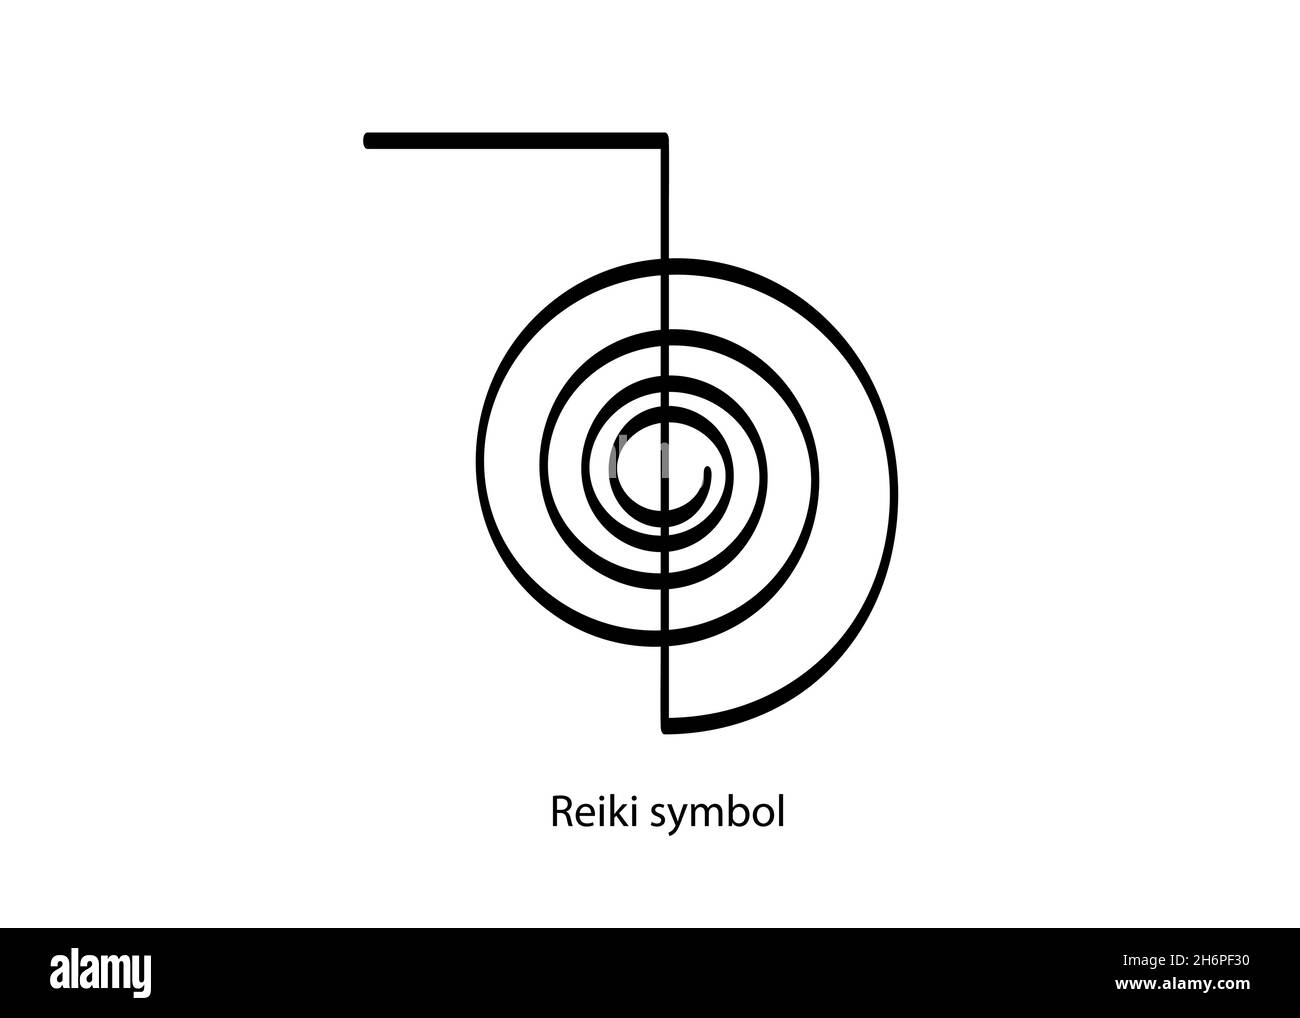 Icona del logo infografico del simbolo Reiki, un segno sacro. Energia spirituale. Medicina alternativa. Spirale mistica esoterica, vettore tatuaggio nero isolato Illustrazione Vettoriale